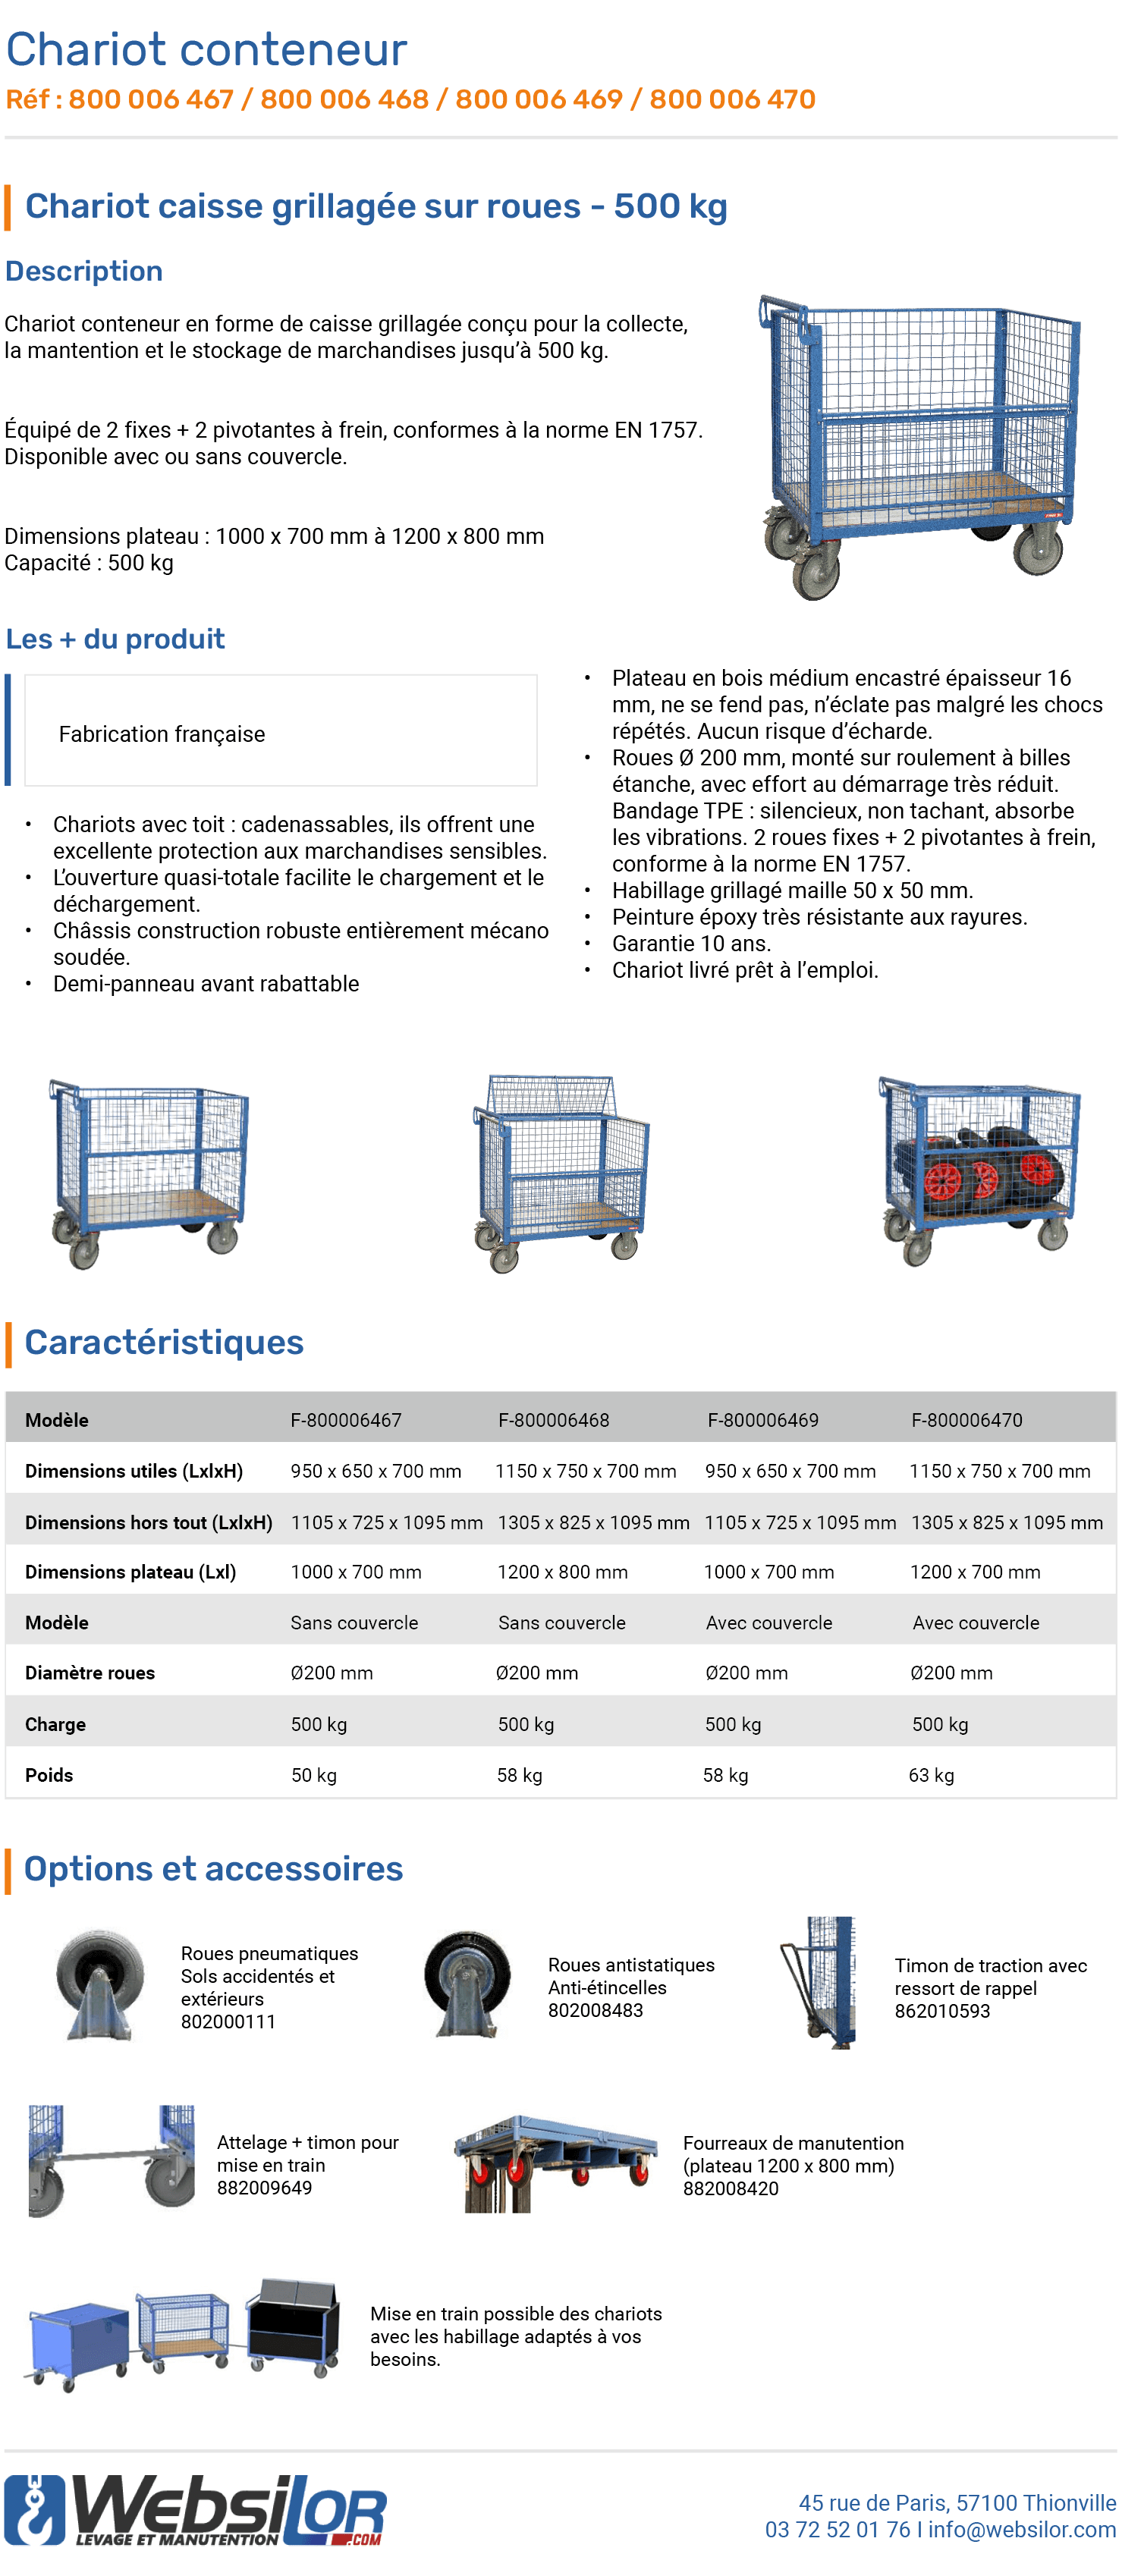 Informations technique de Chariot conteneur cadenassable - 500 kg